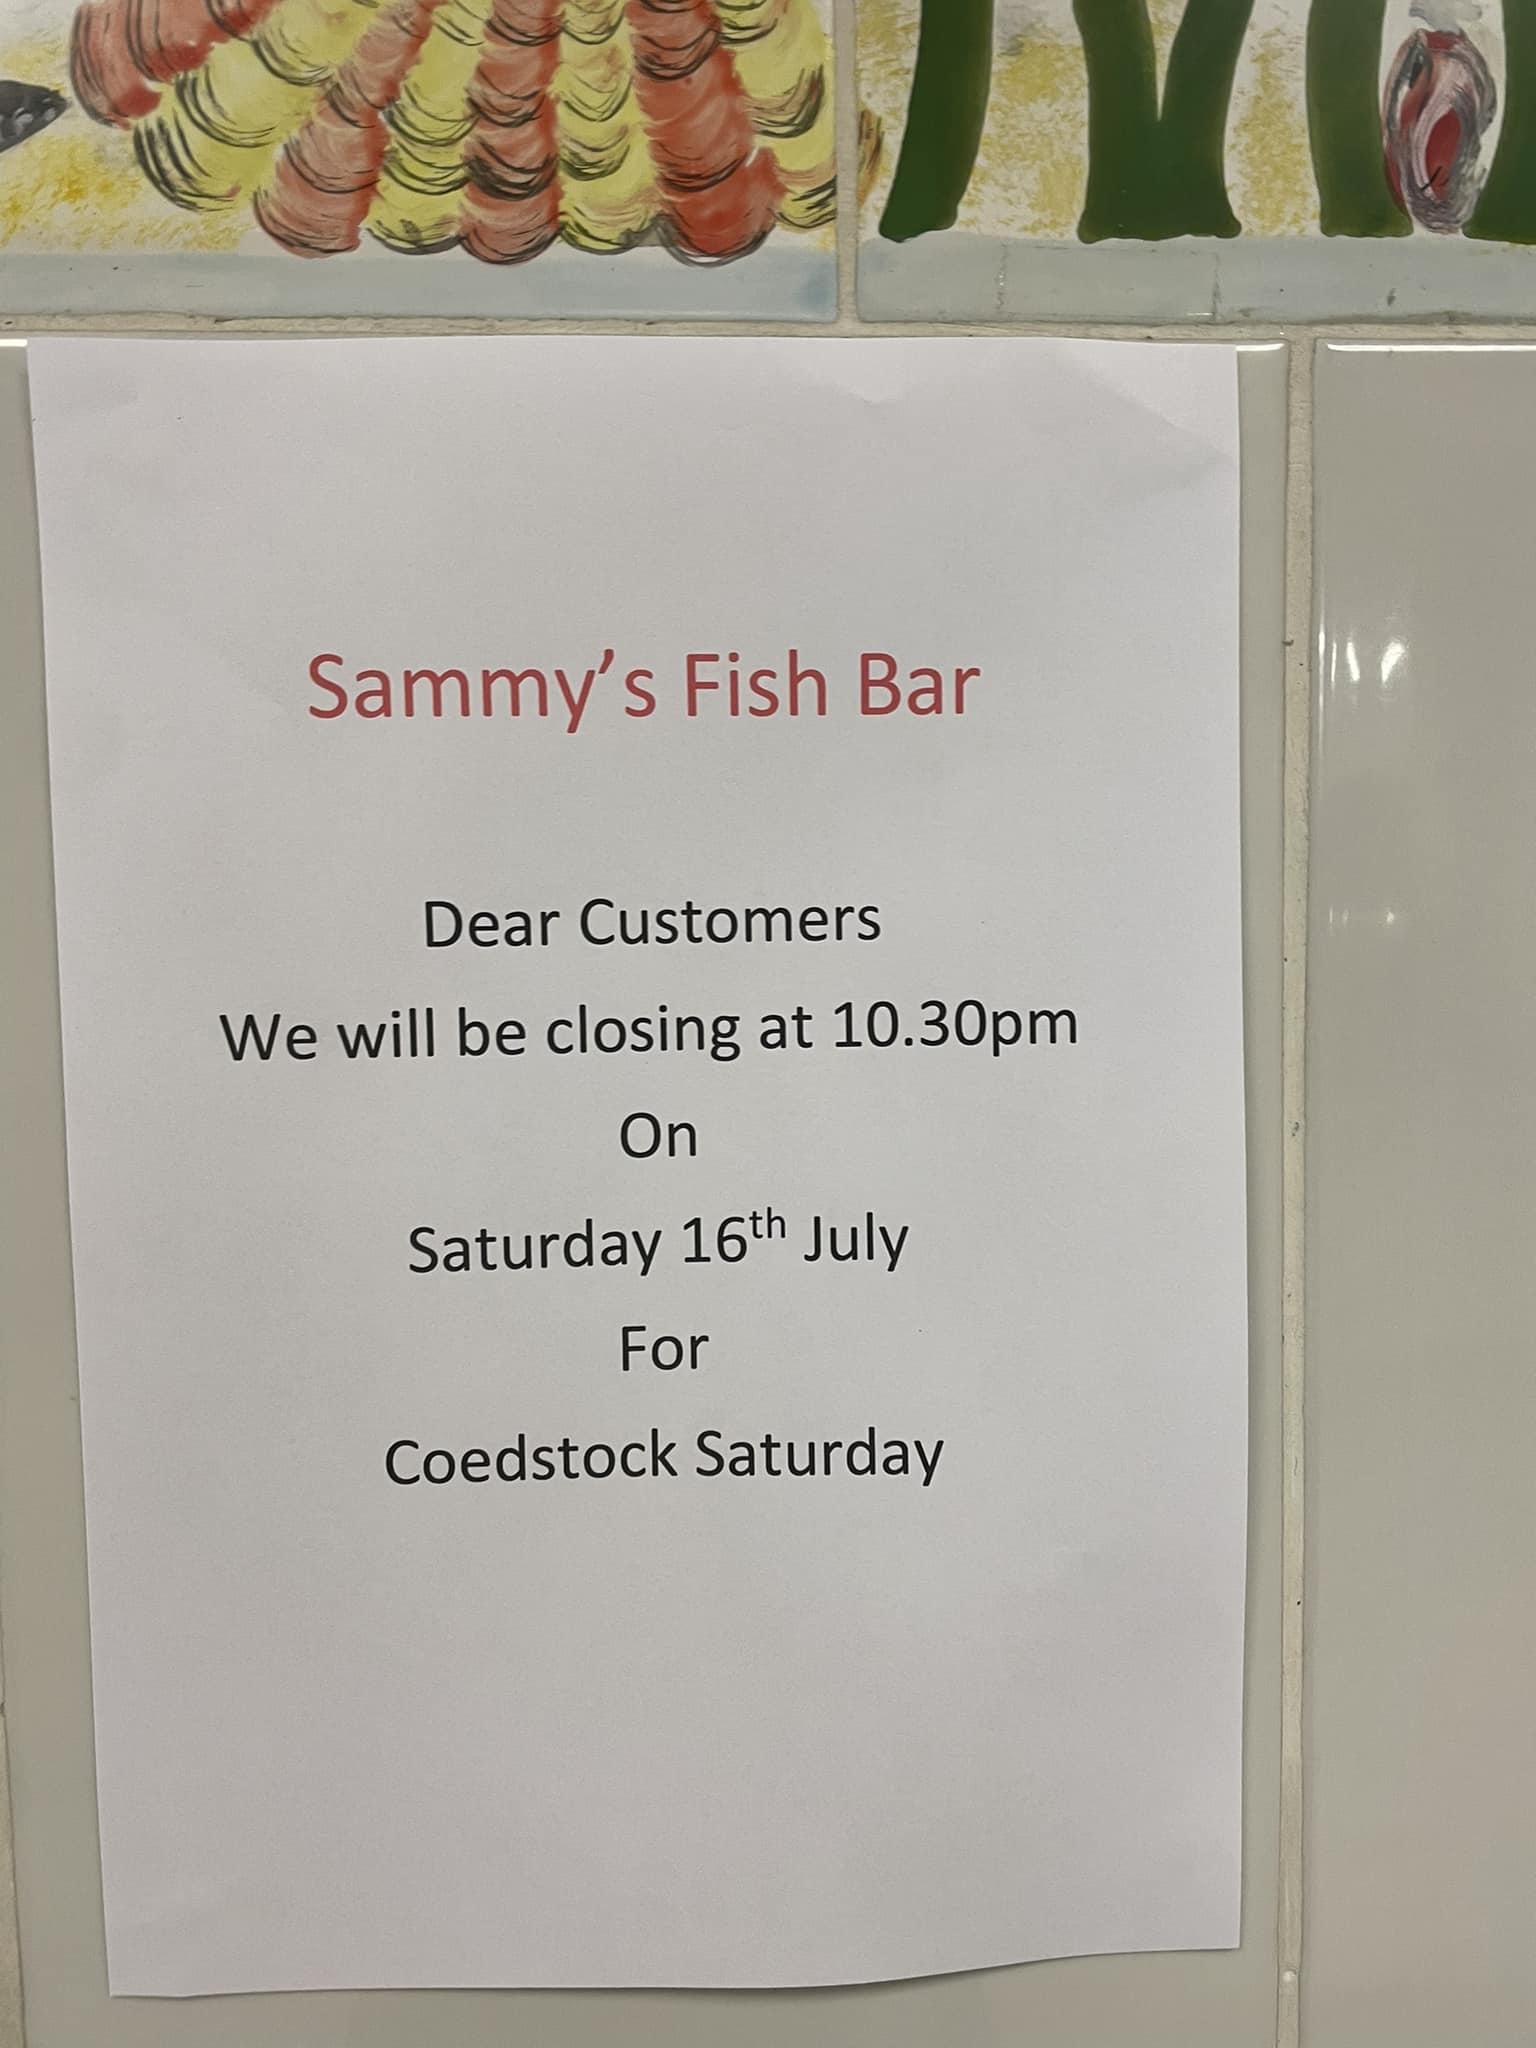 Sammy's Fish Bar